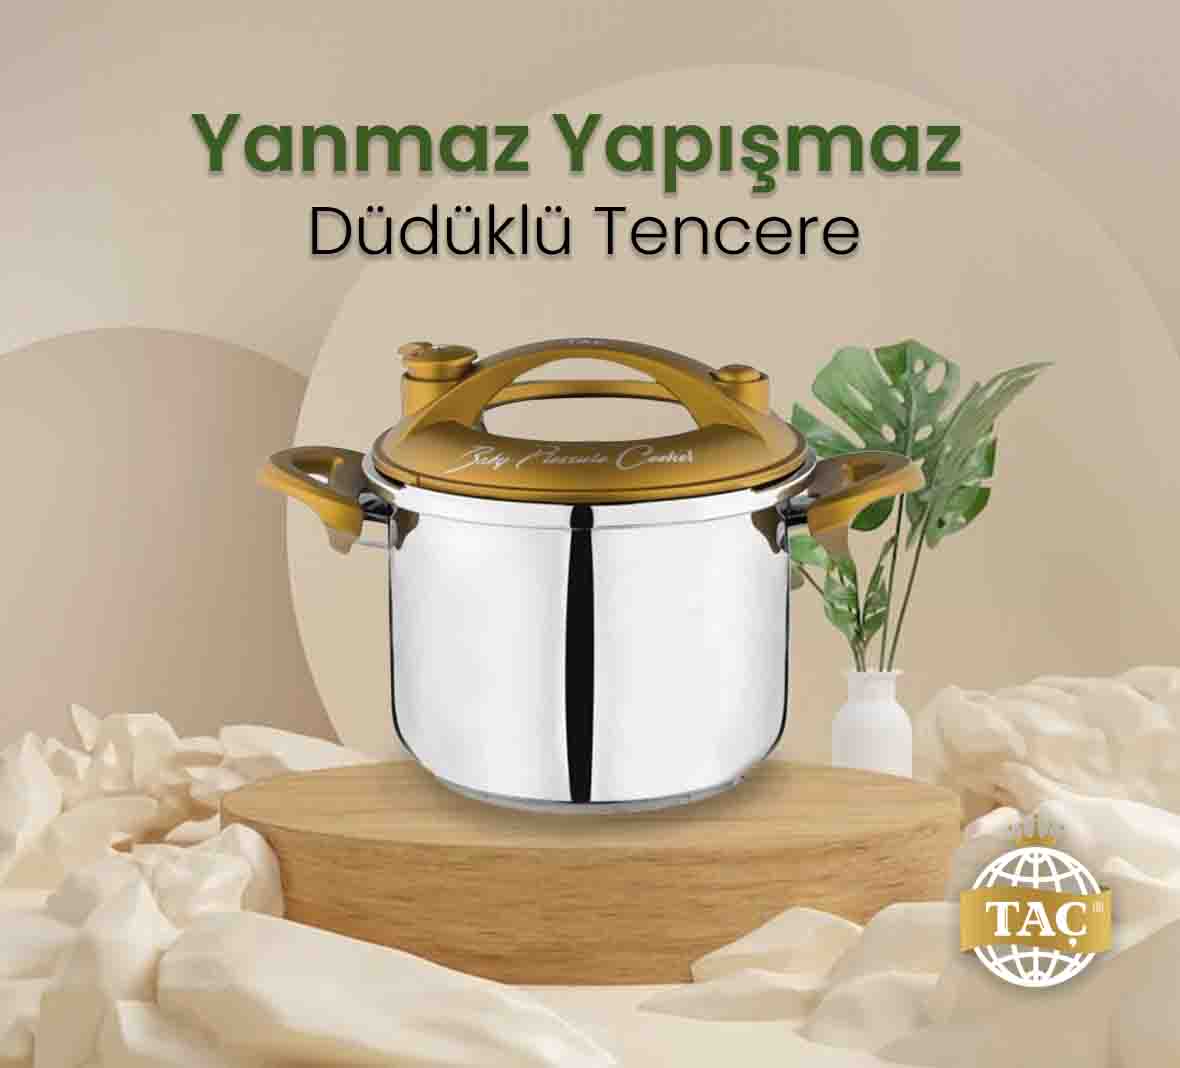 Yanmaz Yapışmaz Düdüklü Tencere - Mutfak Pişirme Ürünleri - Tacev.com